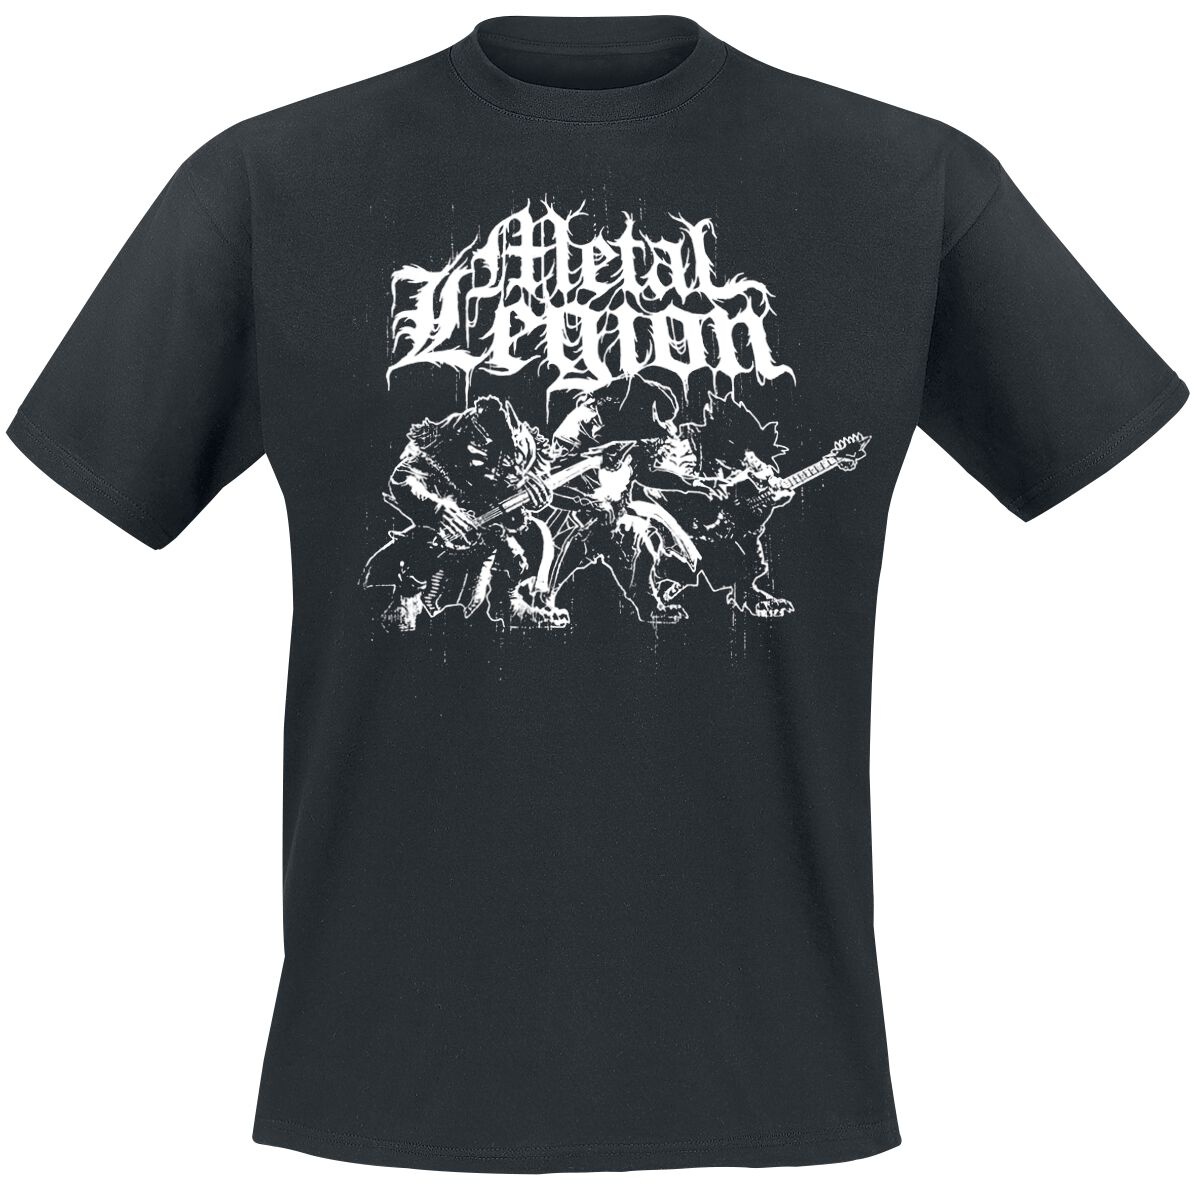 Guild Wars - Gaming T-Shirt - 2 - Metal Legion - S bis L - für Männer - Größe L - schwarz  - EMP exklusives Merchandise!